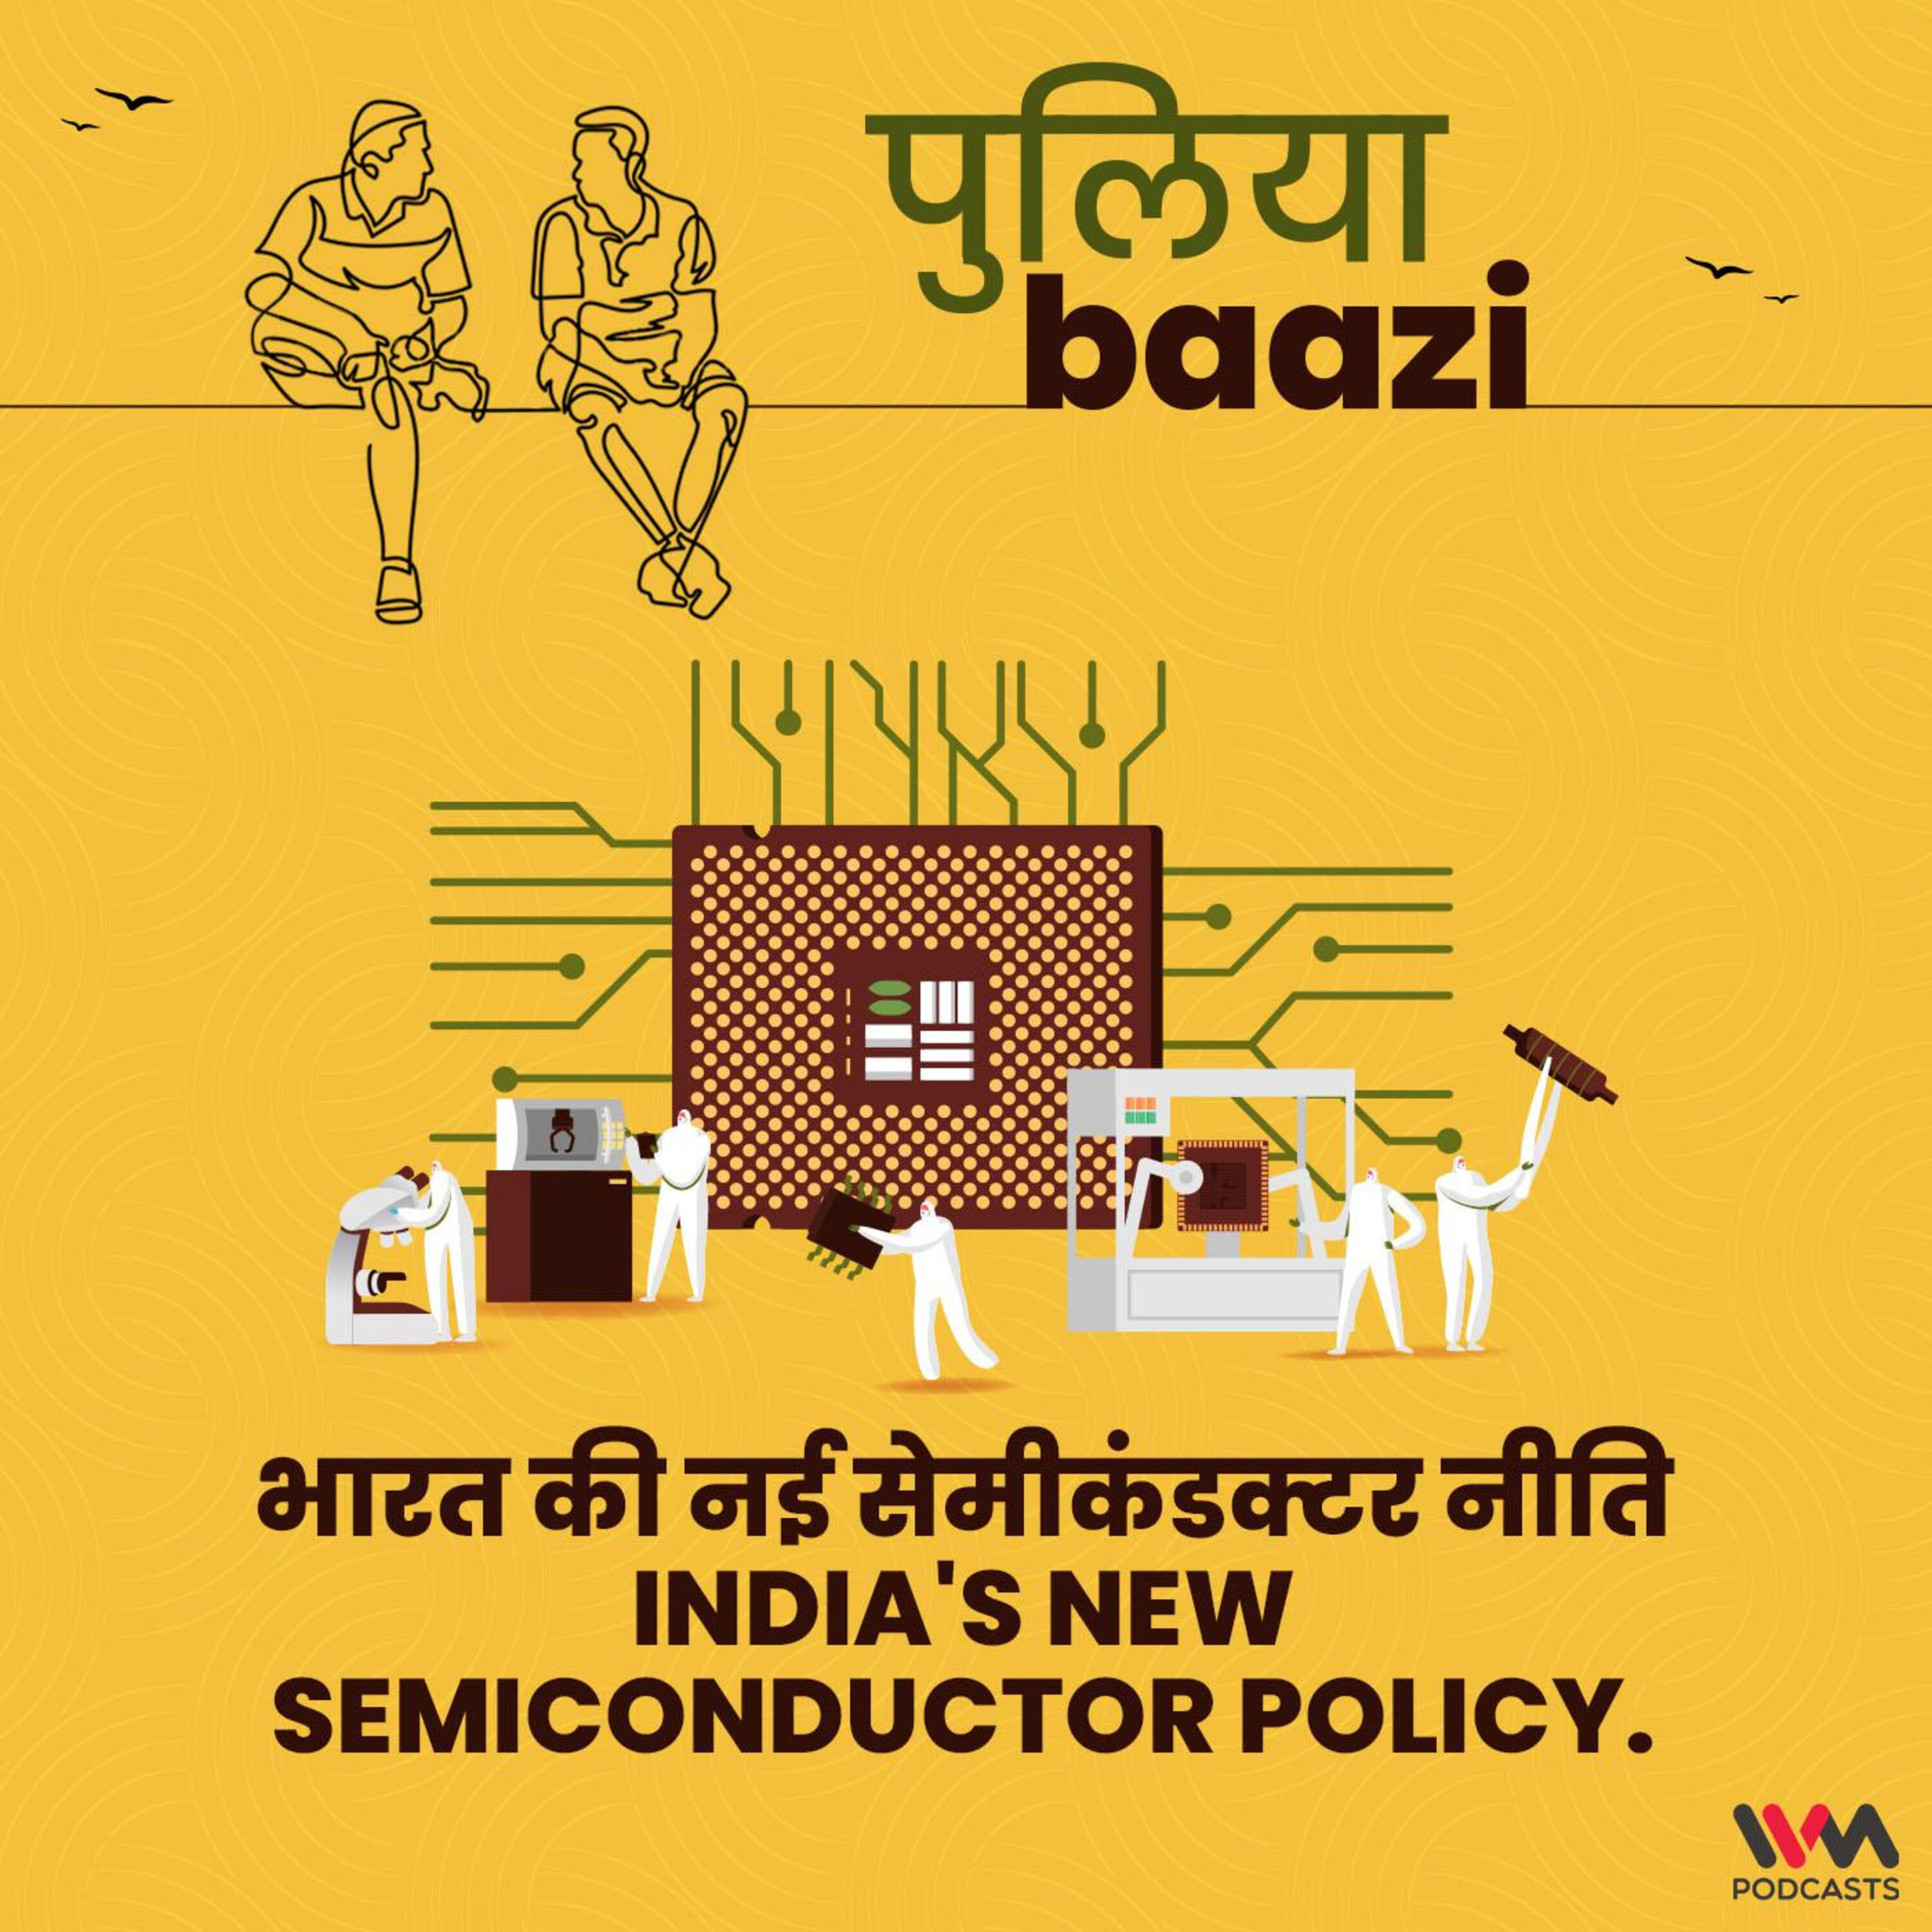 भारत की नई सेमीकंडक्टर नीति. India's New Semiconductor Policy.